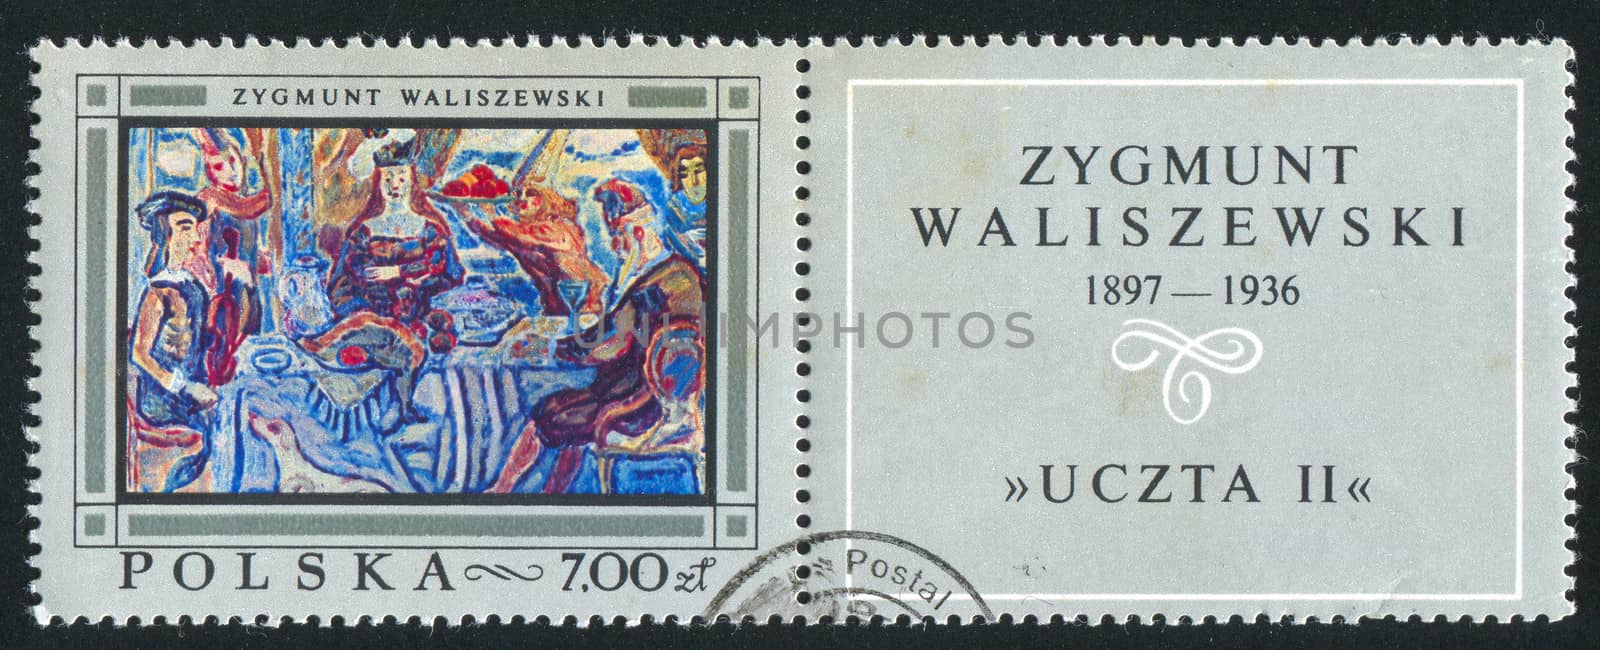 POLAND - CIRCA 1968: stamp printed by Poland, shows Feast II, by Zygmunt Waliszewski, circa 1968